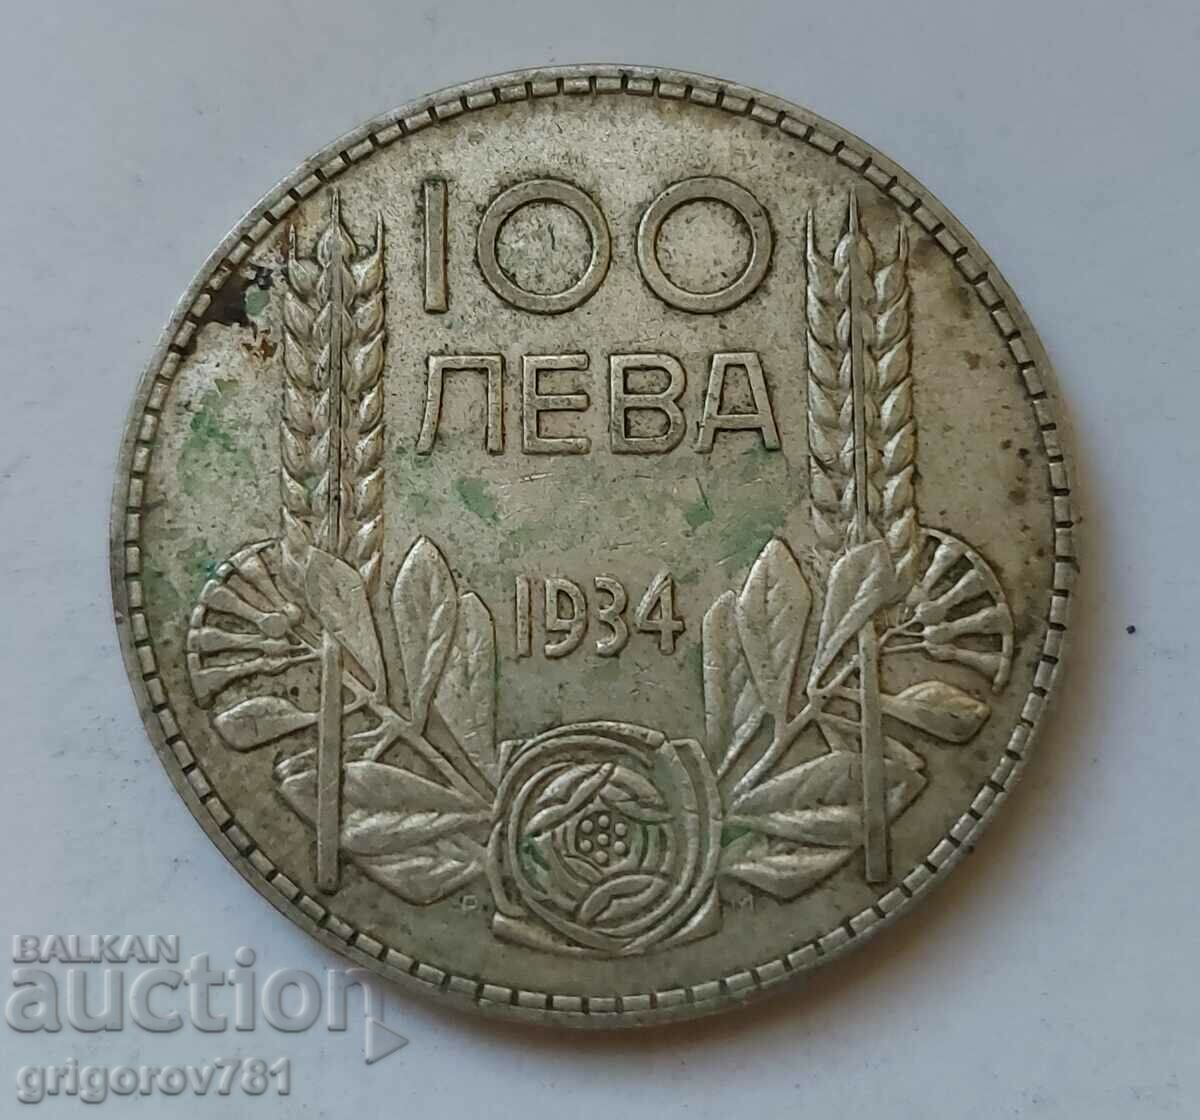 Ασήμι 100 λέβα Βουλγαρία 1934 - ασημένιο νόμισμα #132